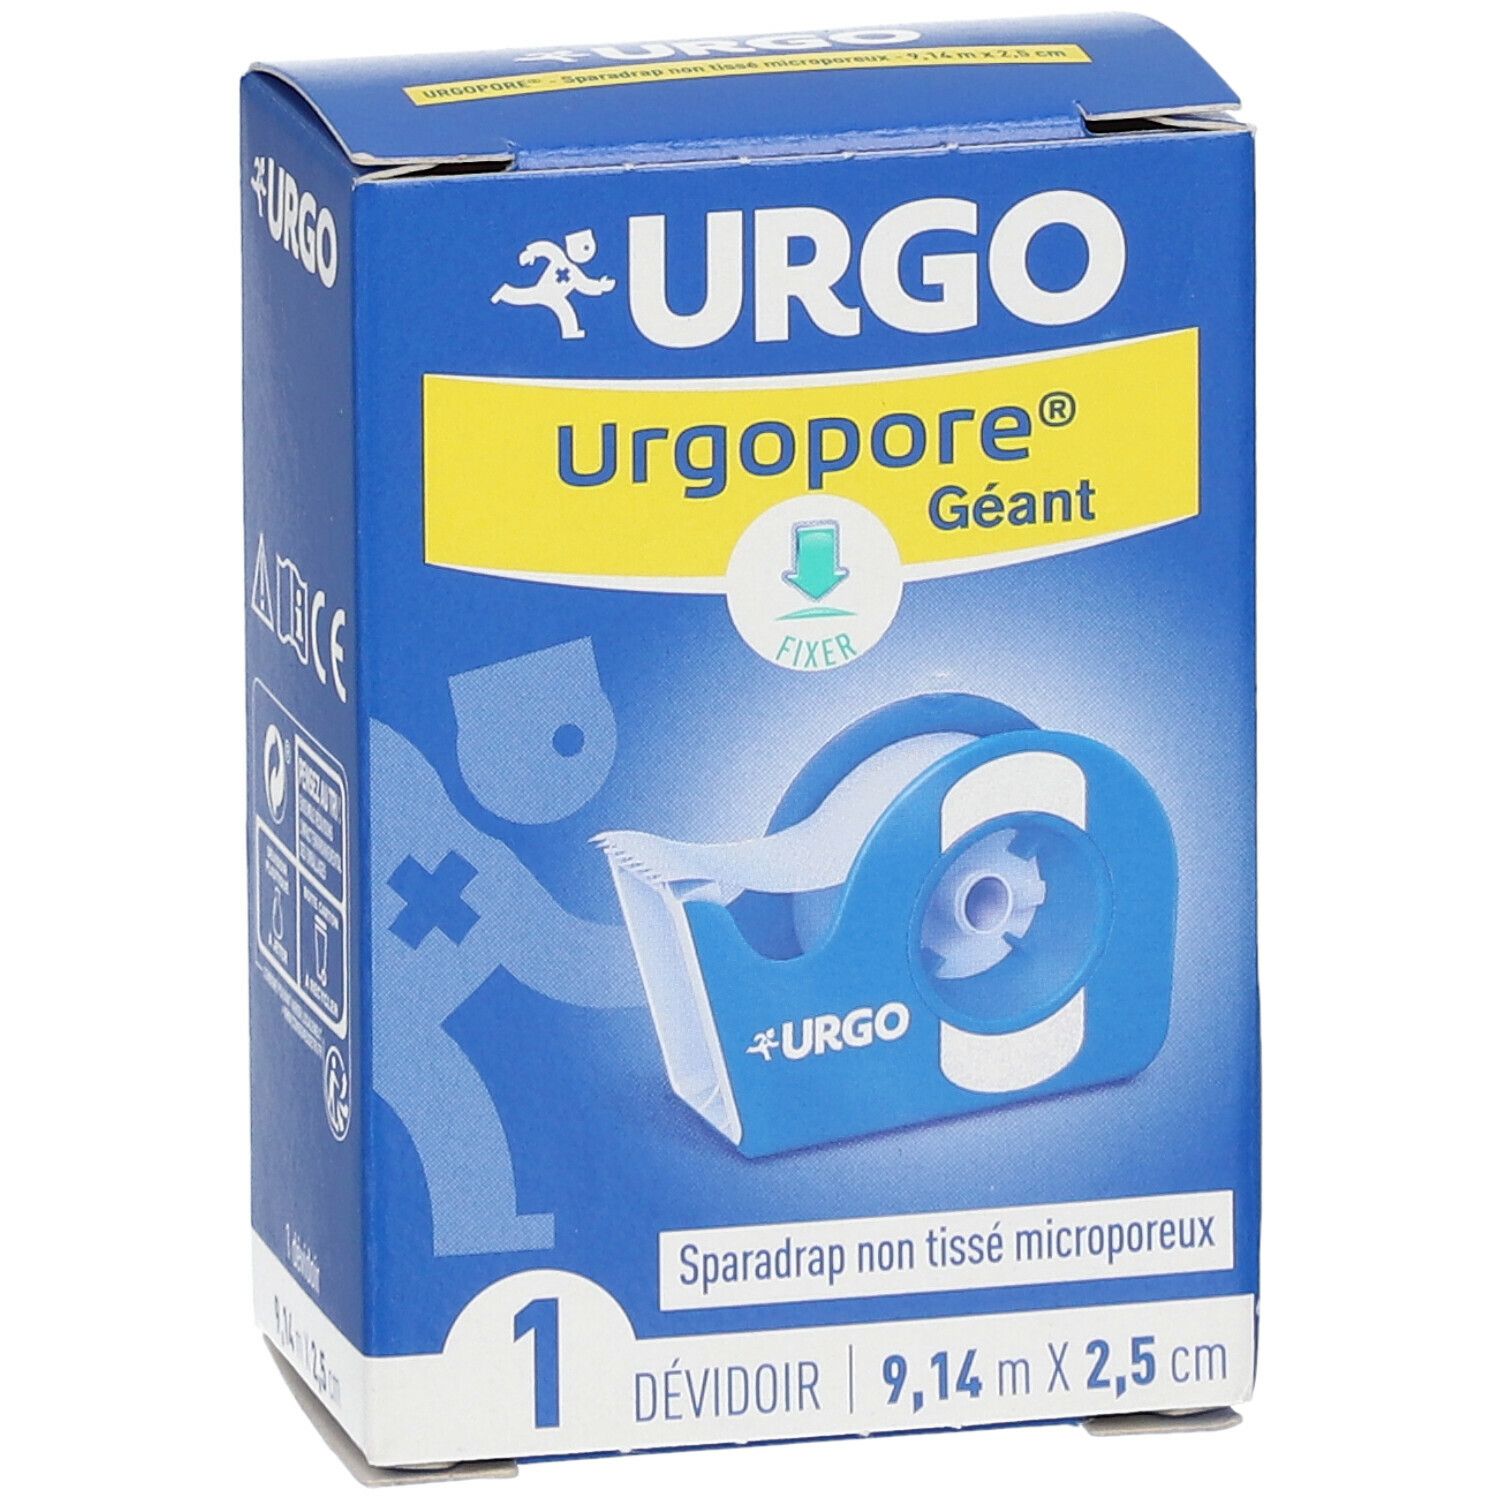 URGO Urgopore® Géant Sparadrap NT microporeux 9,14 m x 2,5 cm